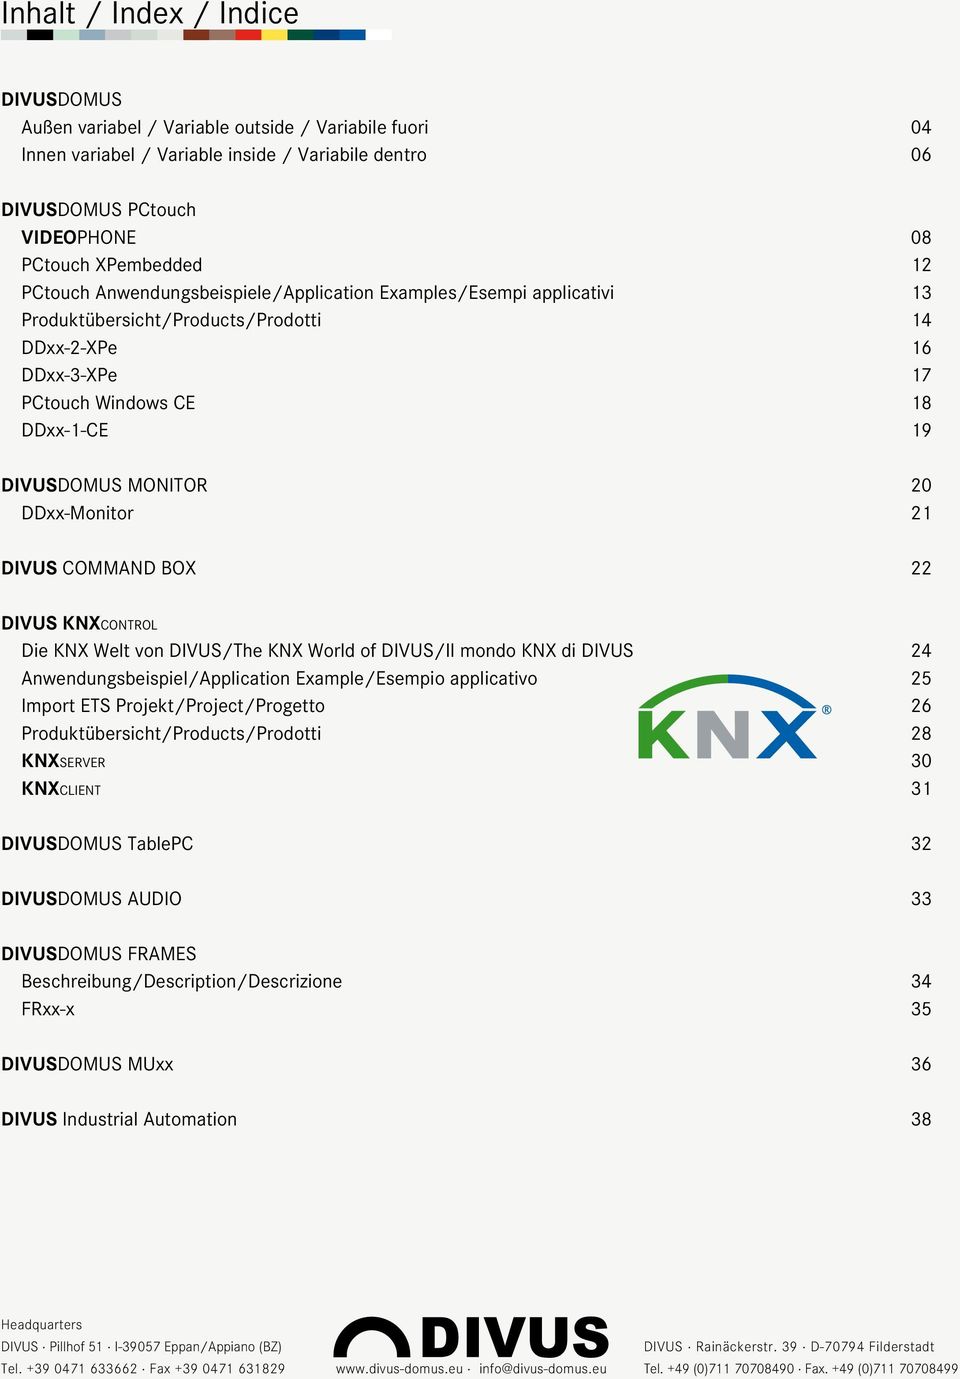 DDxx-Monitor 21 DIVUS COMMAND BOX 22 DIVUS KNXc o n t r o l Die KNX Welt von DIVUS/The KNX World of DIVUS/Il mondo KNX di DIVUS 24 Anwendungsbeispiel/Application Example/Esempio applicativo 25 Import